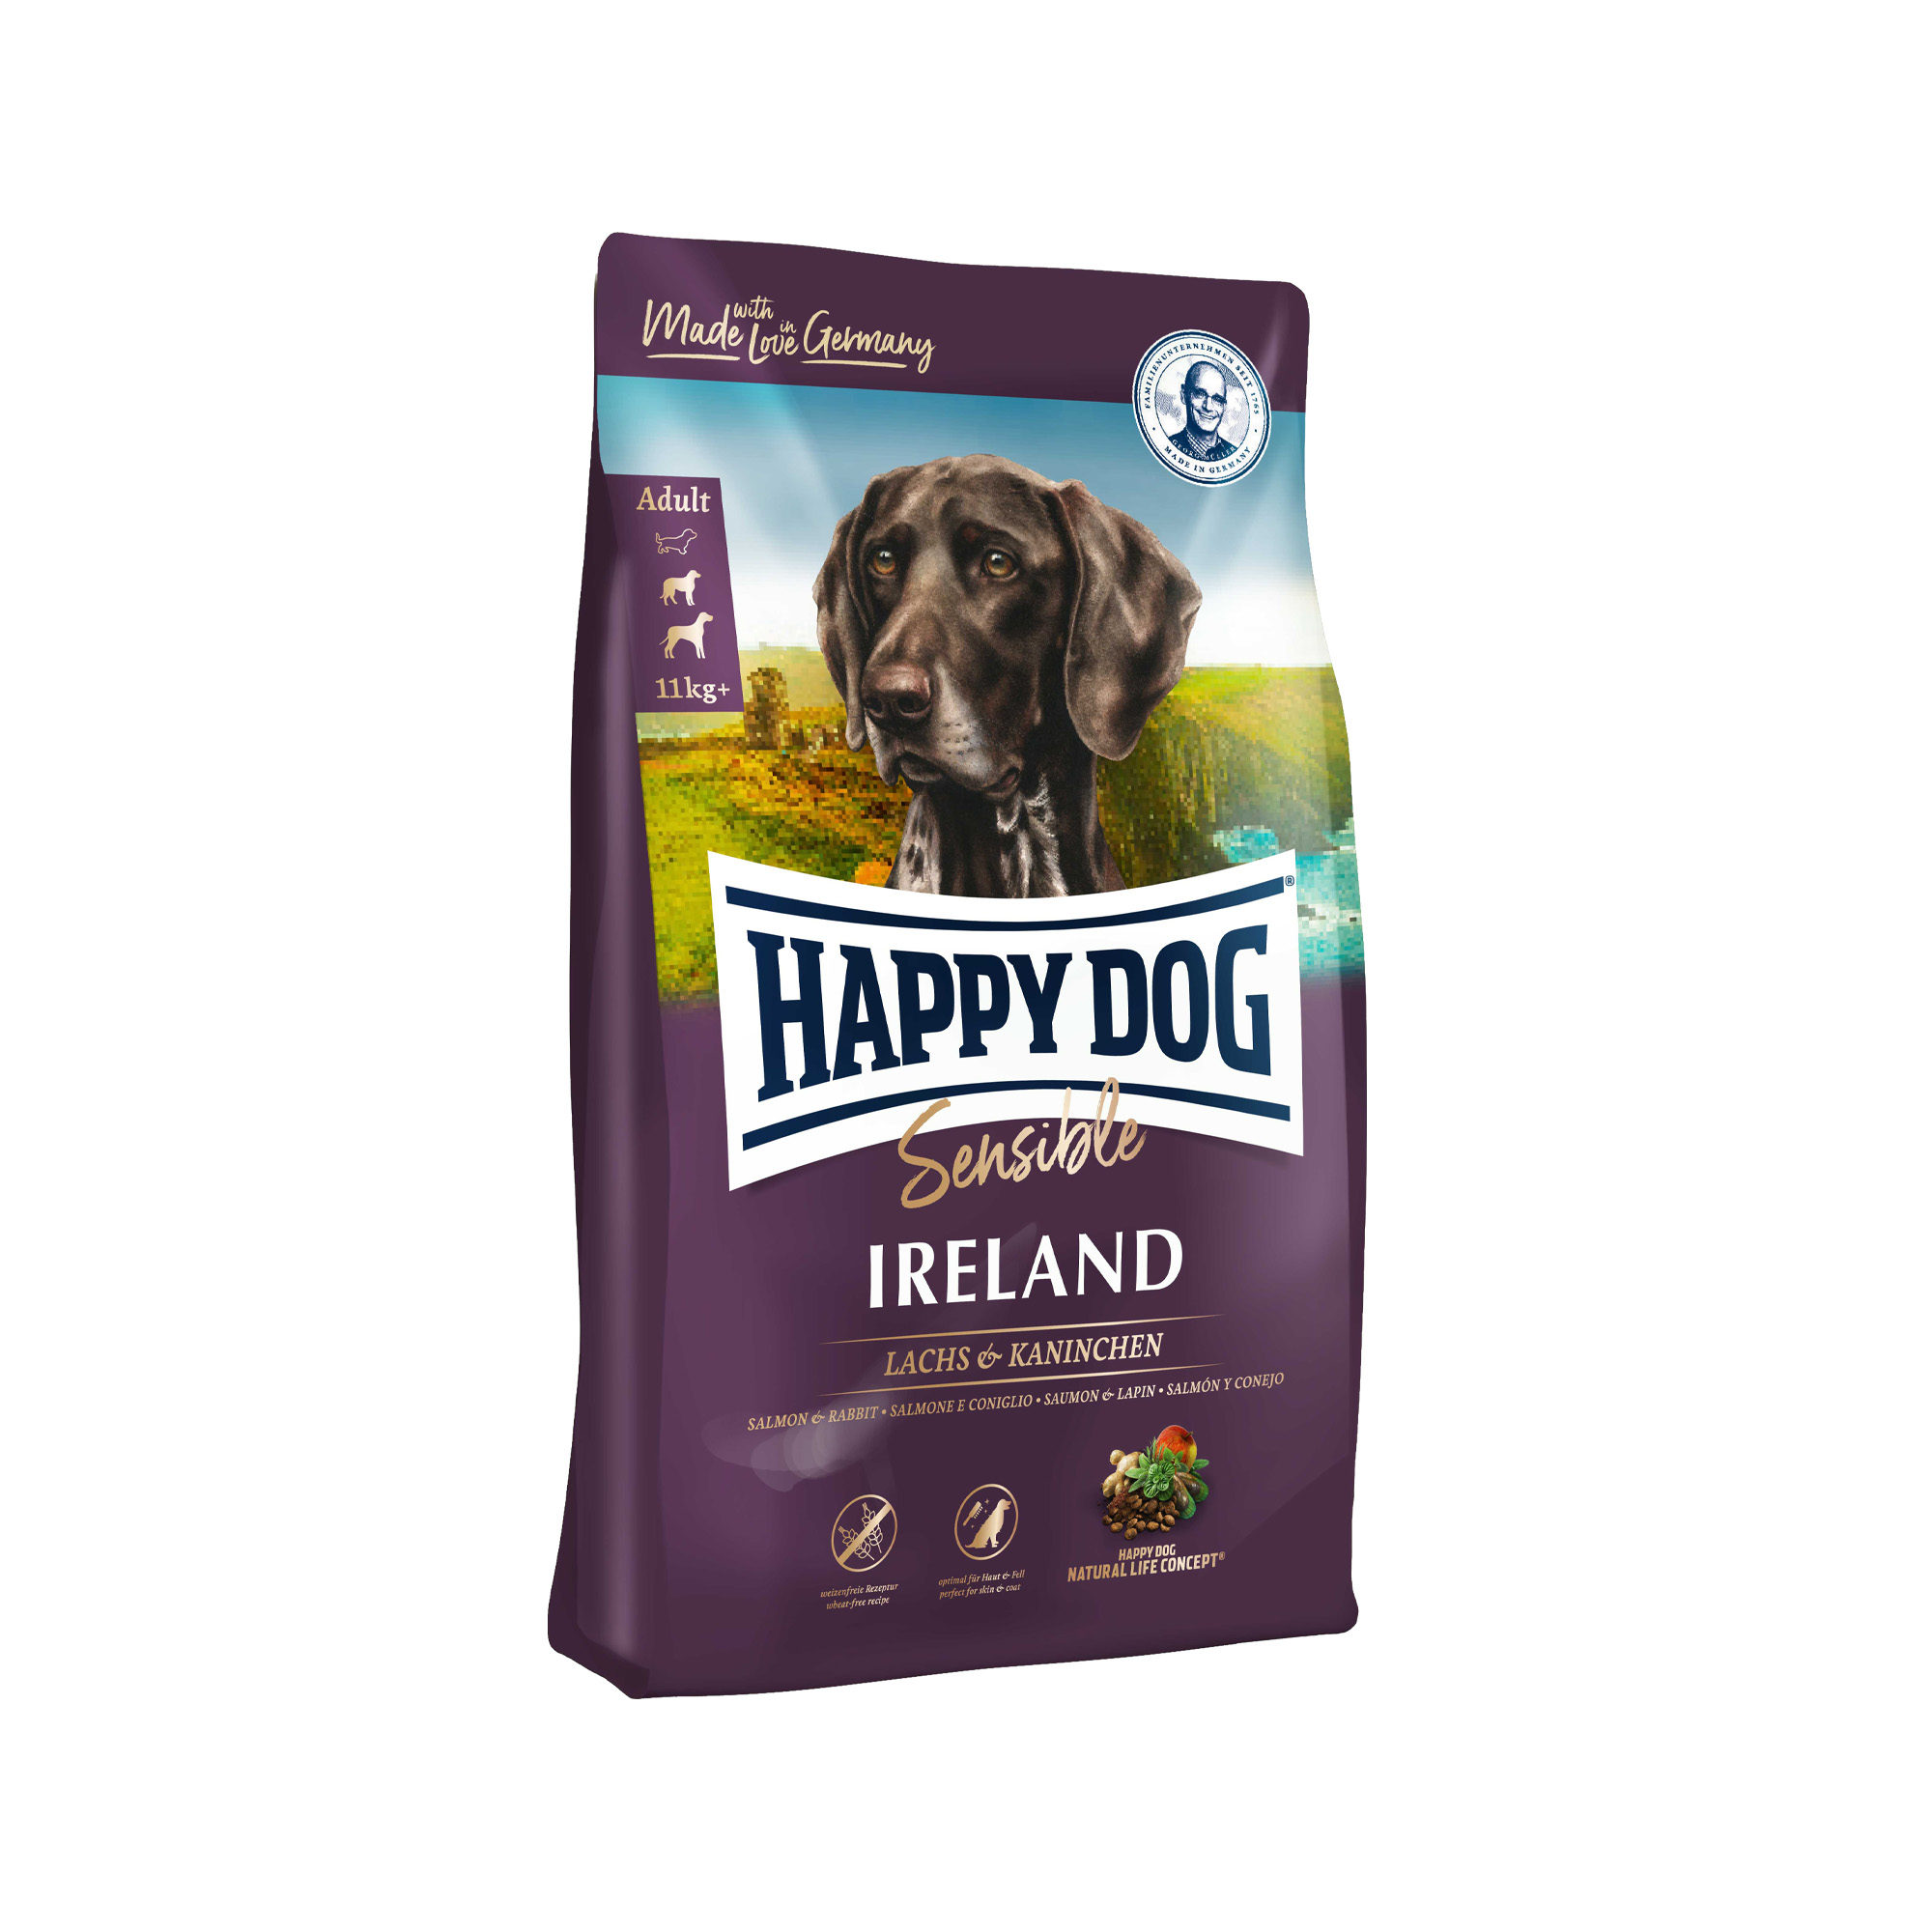 2 x 4 kg Happy Dog Supreme Sensible Irland